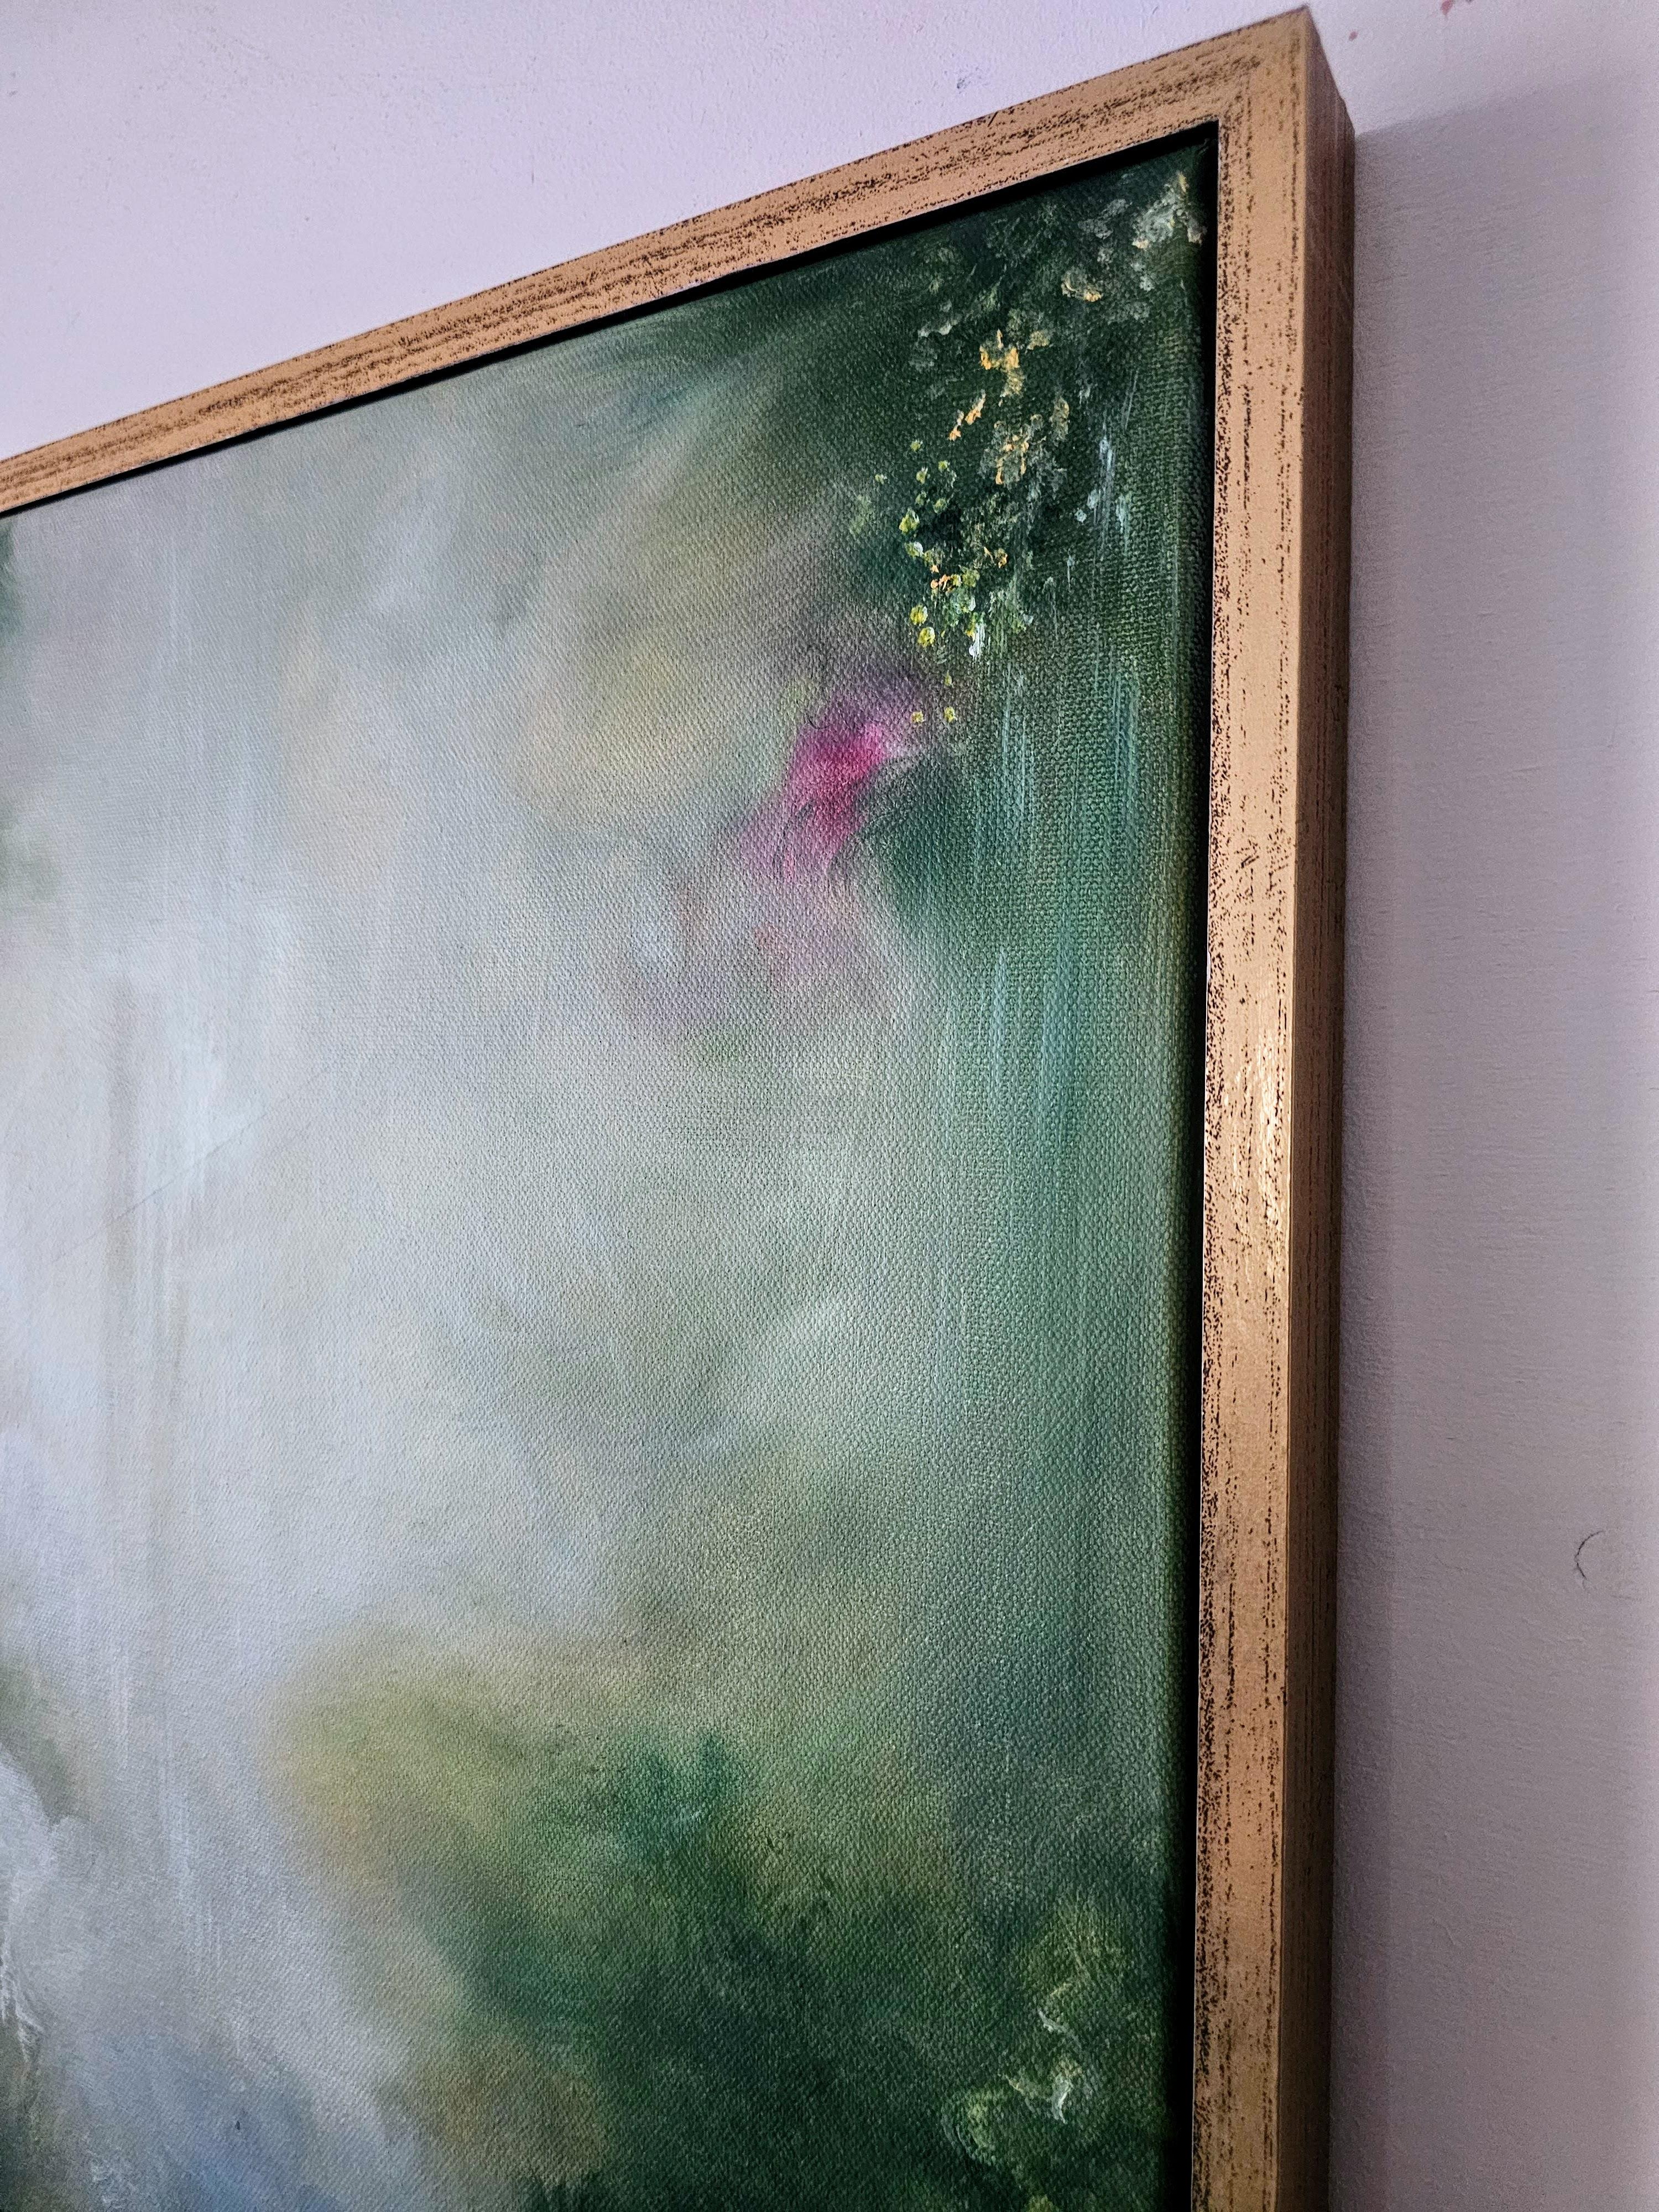 Enchanted - Gerahmtes abstraktes grünes Nature Gemälde (Abstrakter Impressionismus), Painting, von Jennifer L. Baker